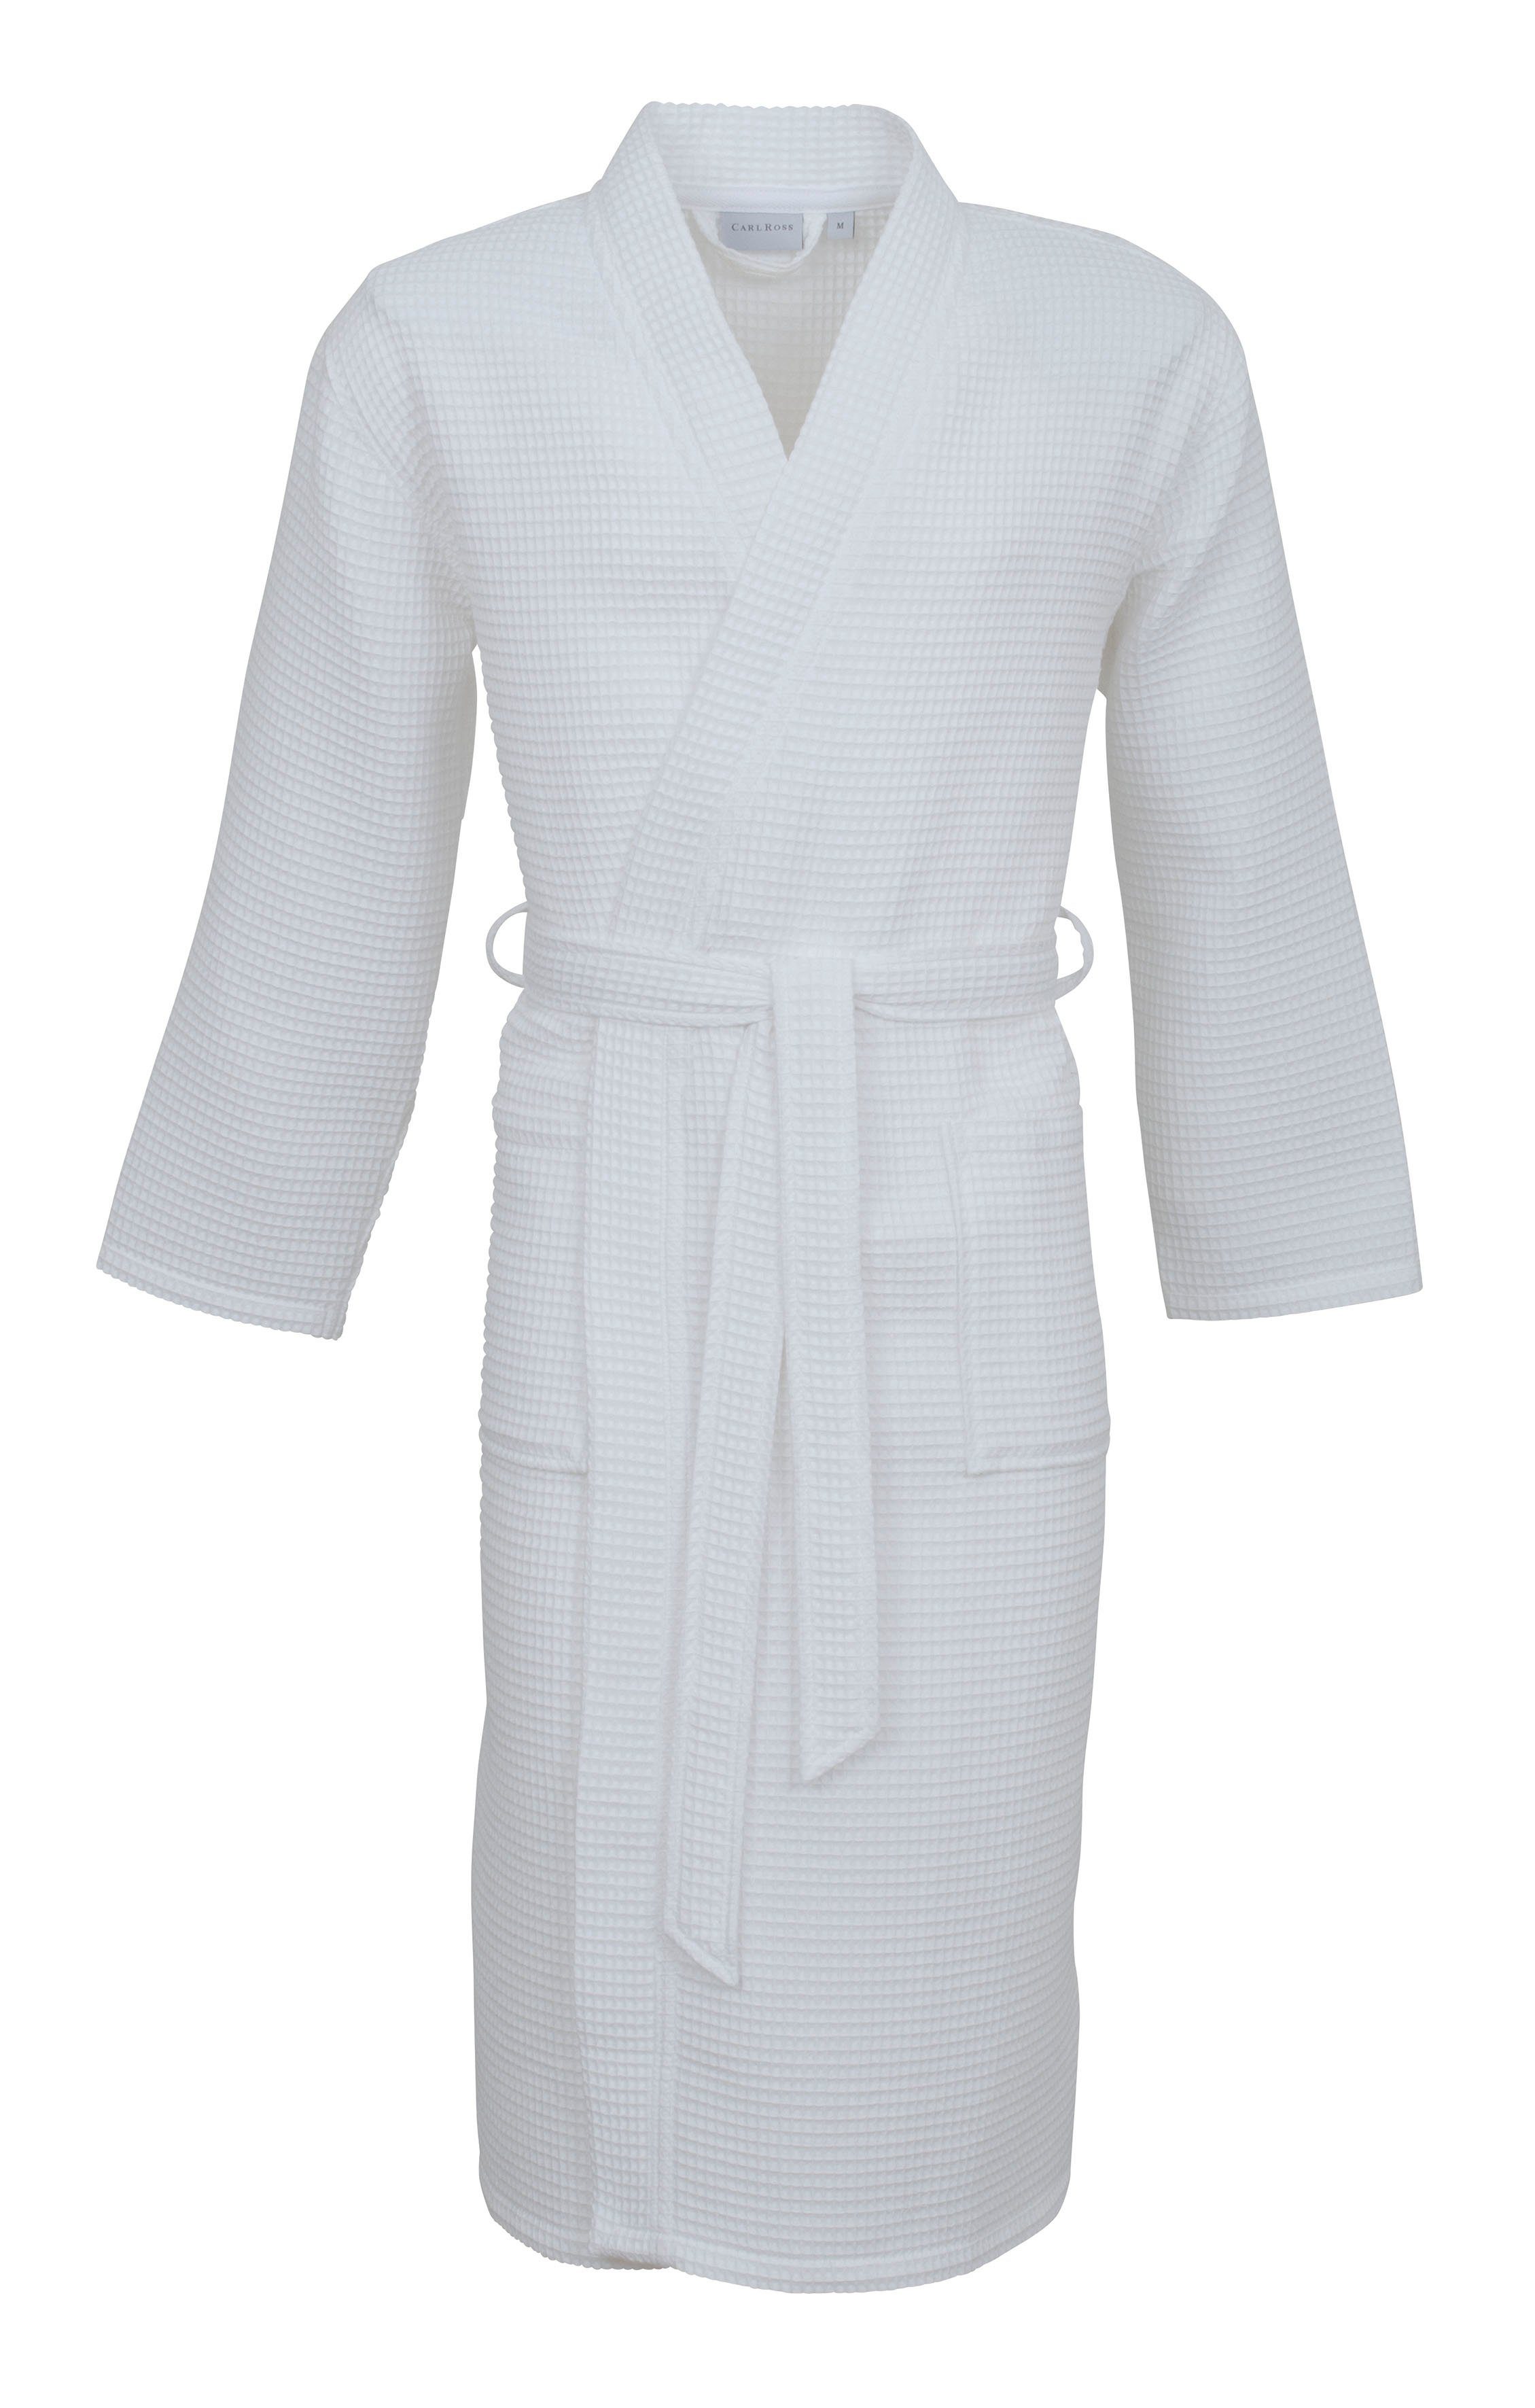 Baumwolle, white Langform, Kimono-Kragen, Gürtel, 25100, Ross Unisex-Bademantel Waffelpique Carl